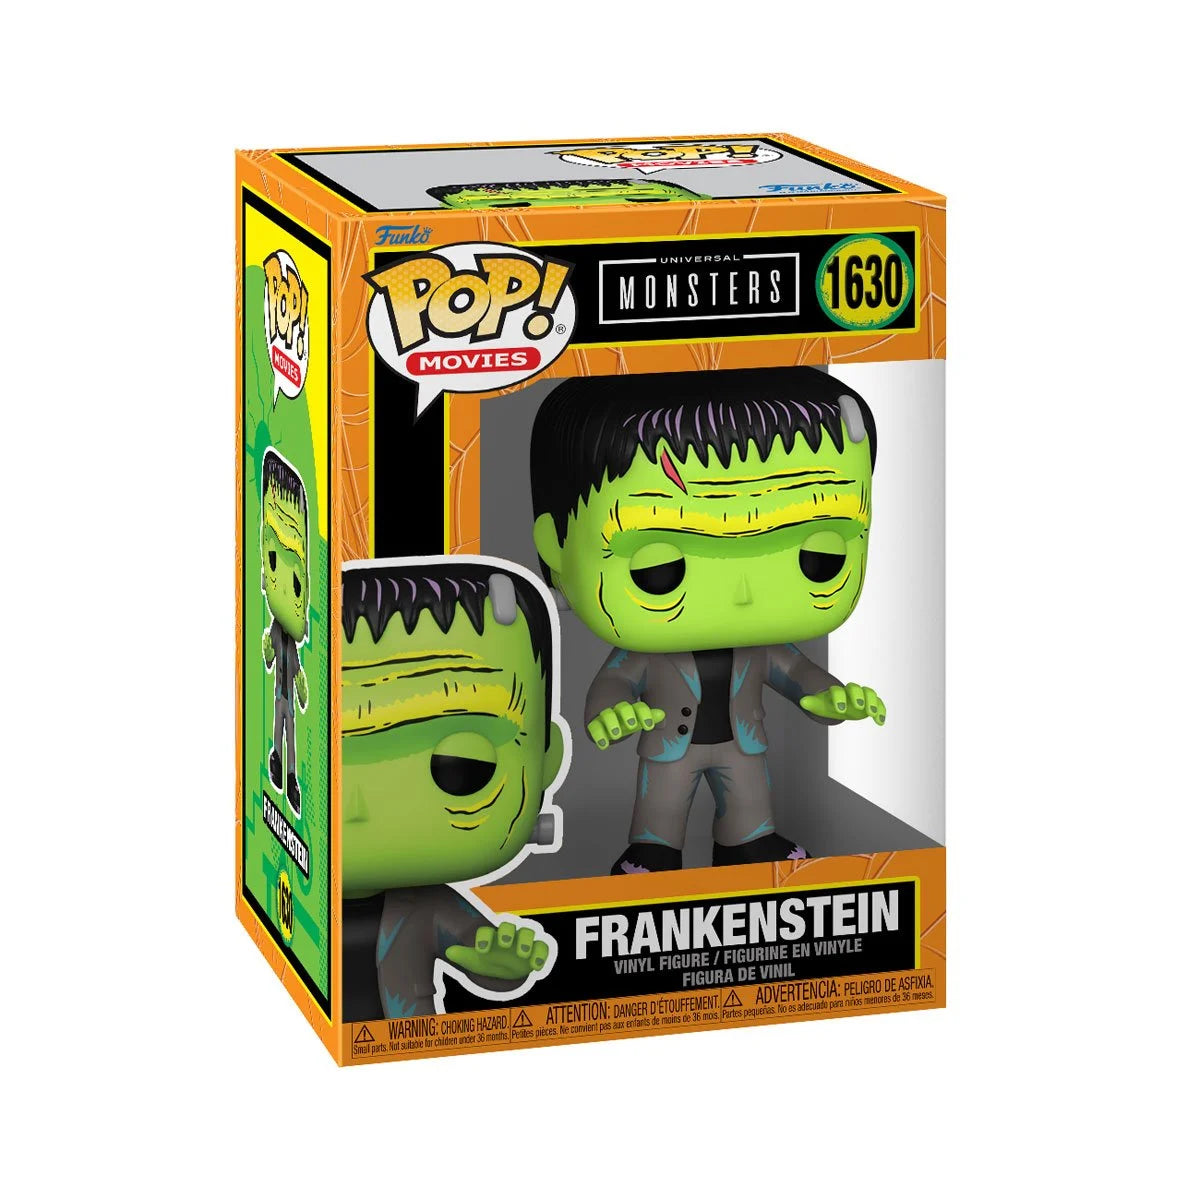 Funko Pop! Universal Monsters Frankenstein Vinyl Figure #1630